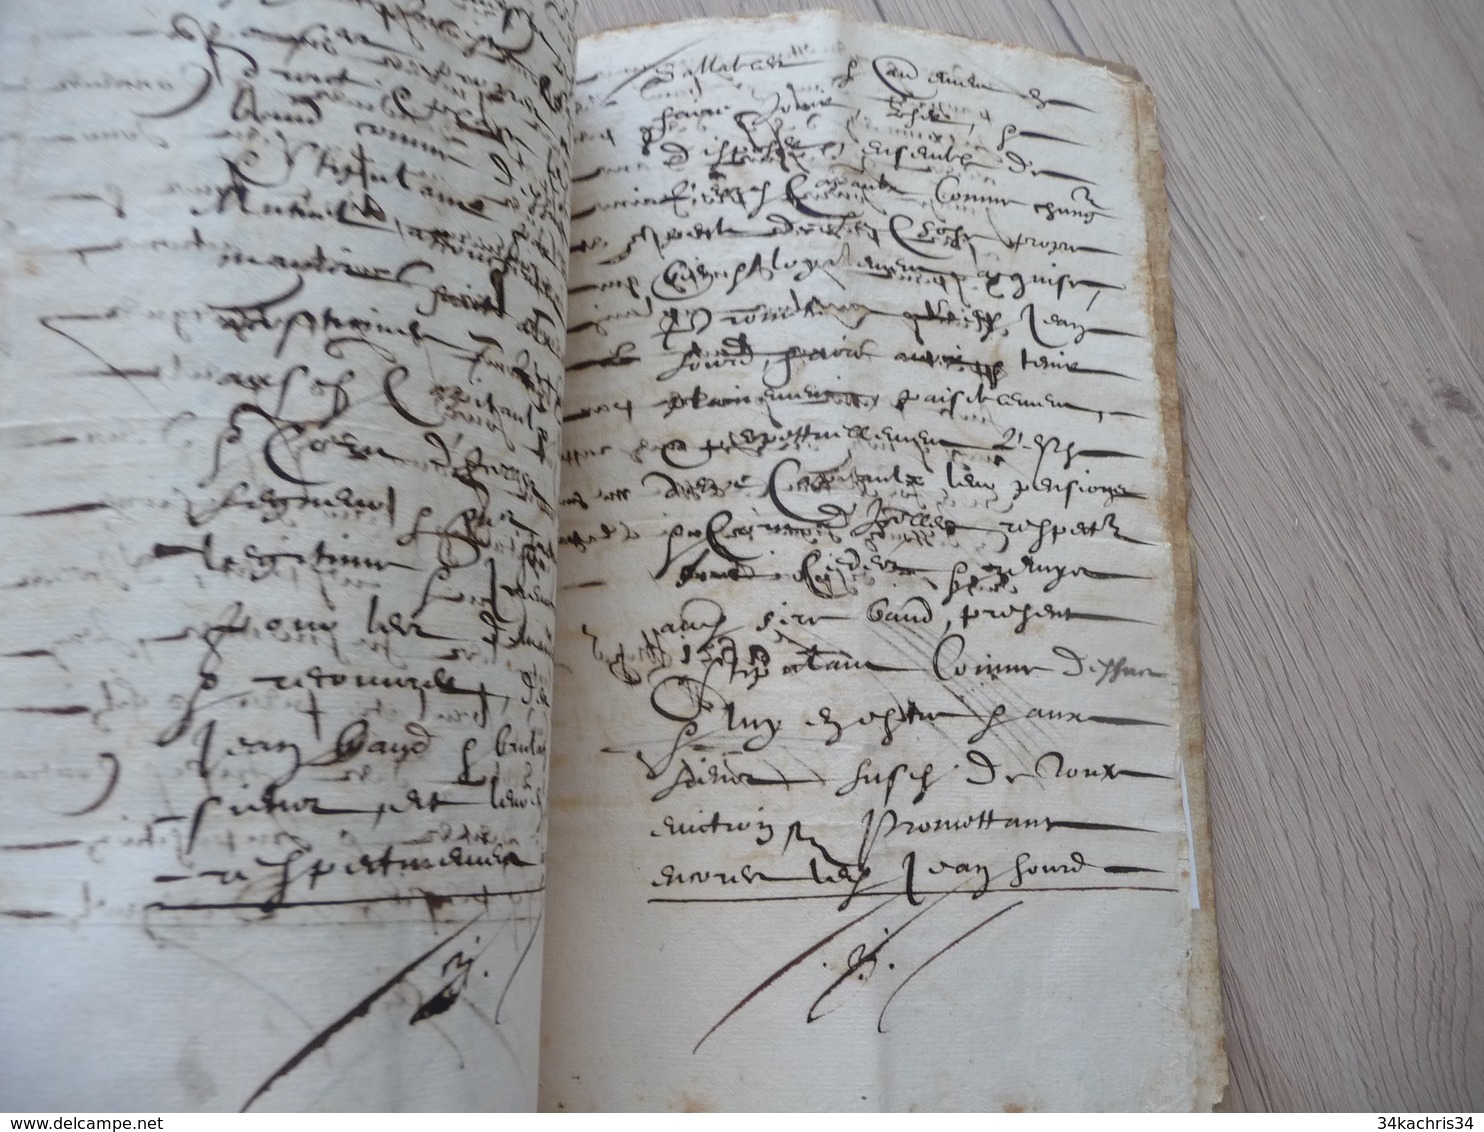 Manuscrit papier couverture velin 1614 attestations pensions Jean Baud Brulat de Malemort 5 p petit manque en 1